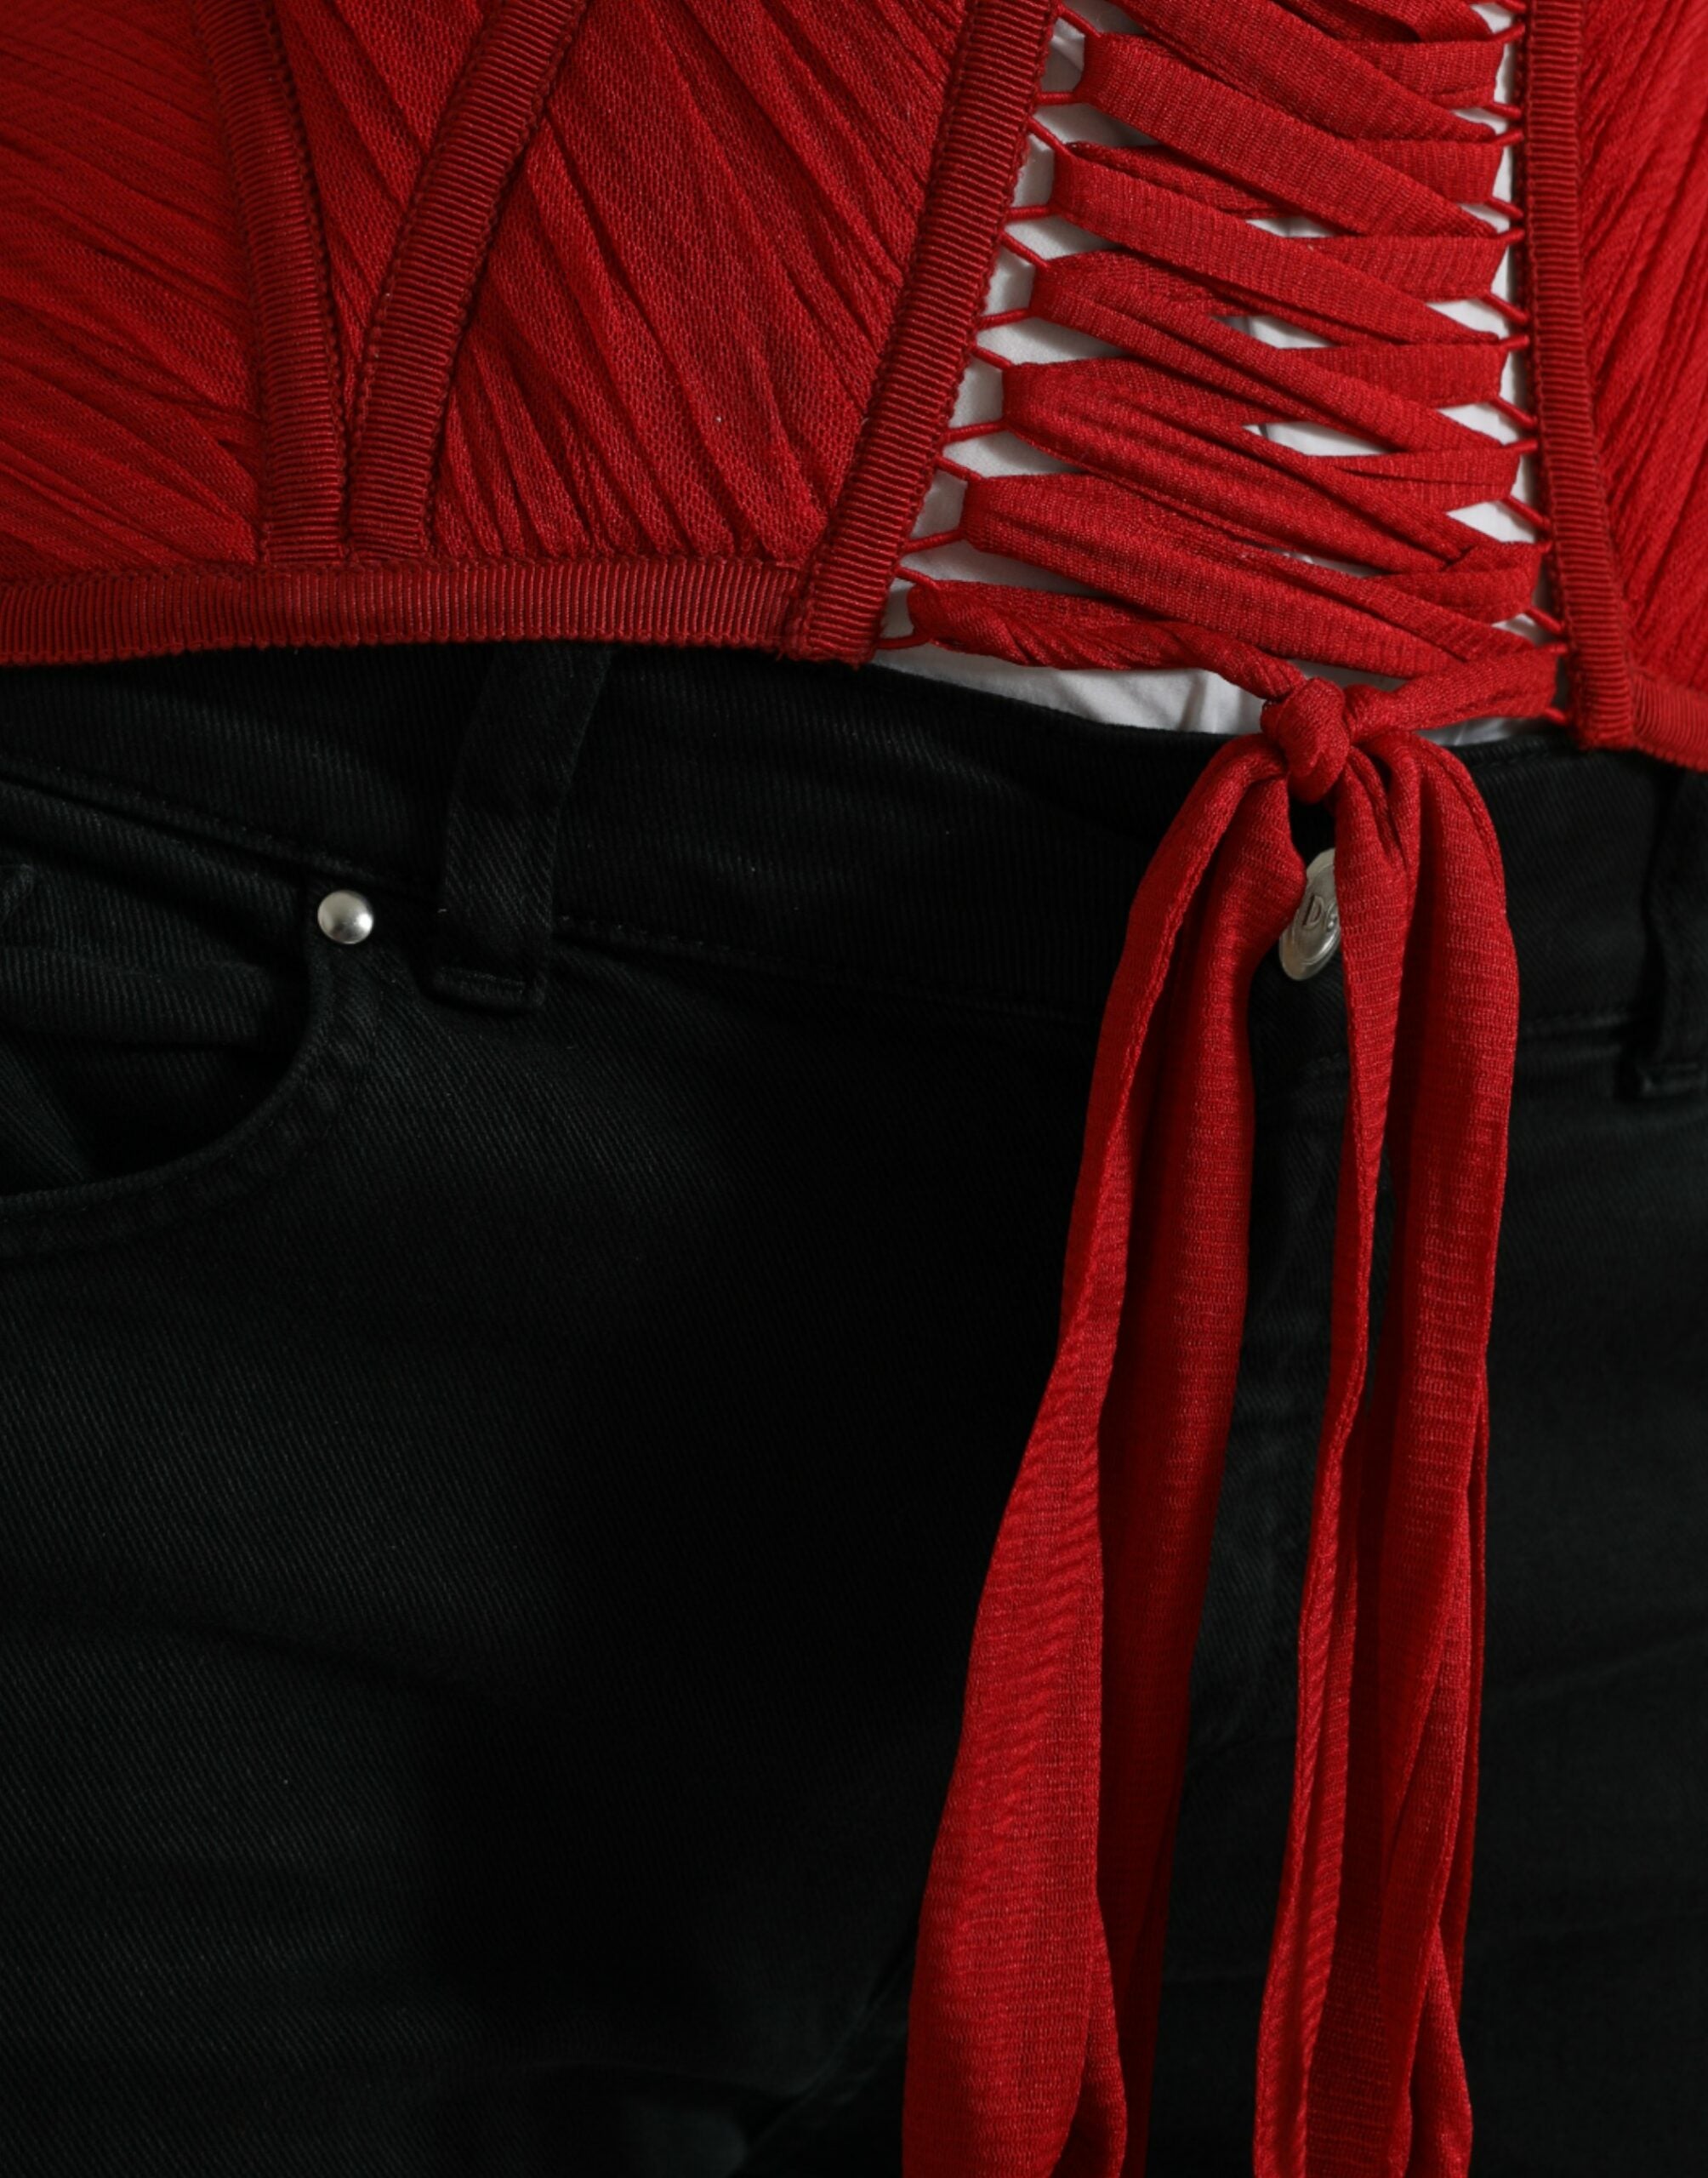 Dolce & Gabbana – Seiden-Korsett-Taillengürtel in feurigem Rot